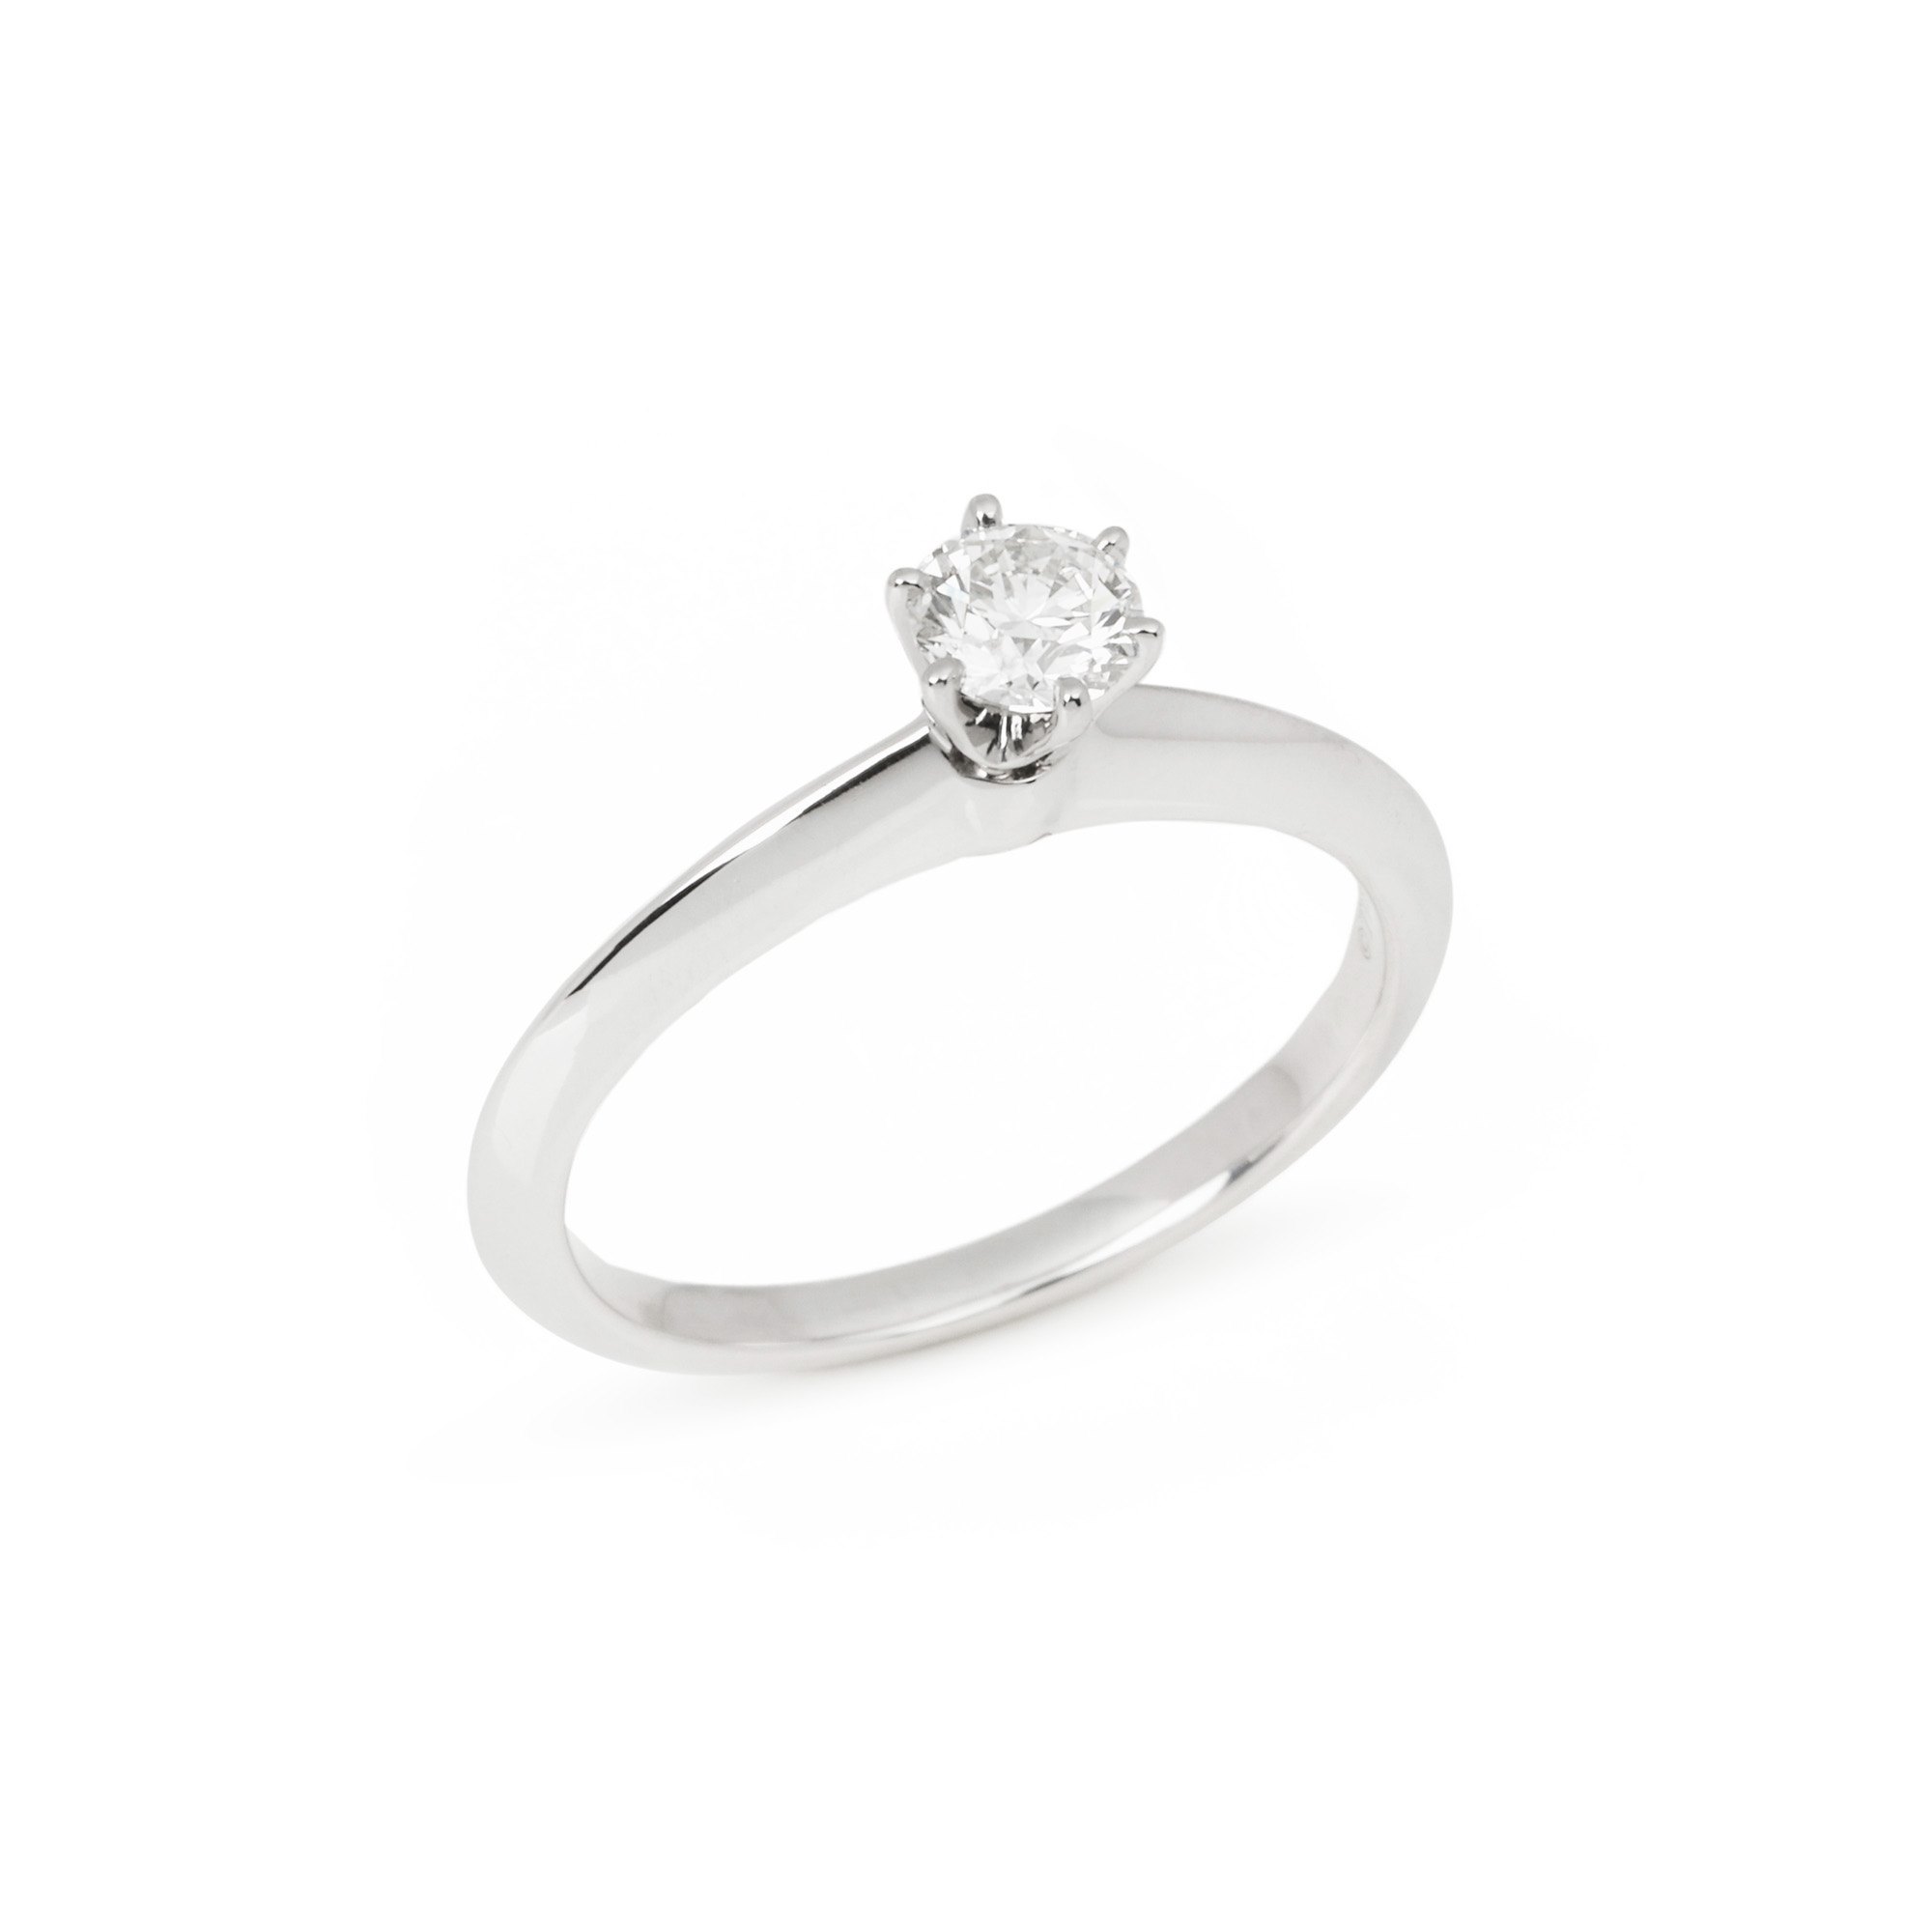 Tiffany & Co. Brilliant Cut 0.29ct Diamond Solitaire Ring